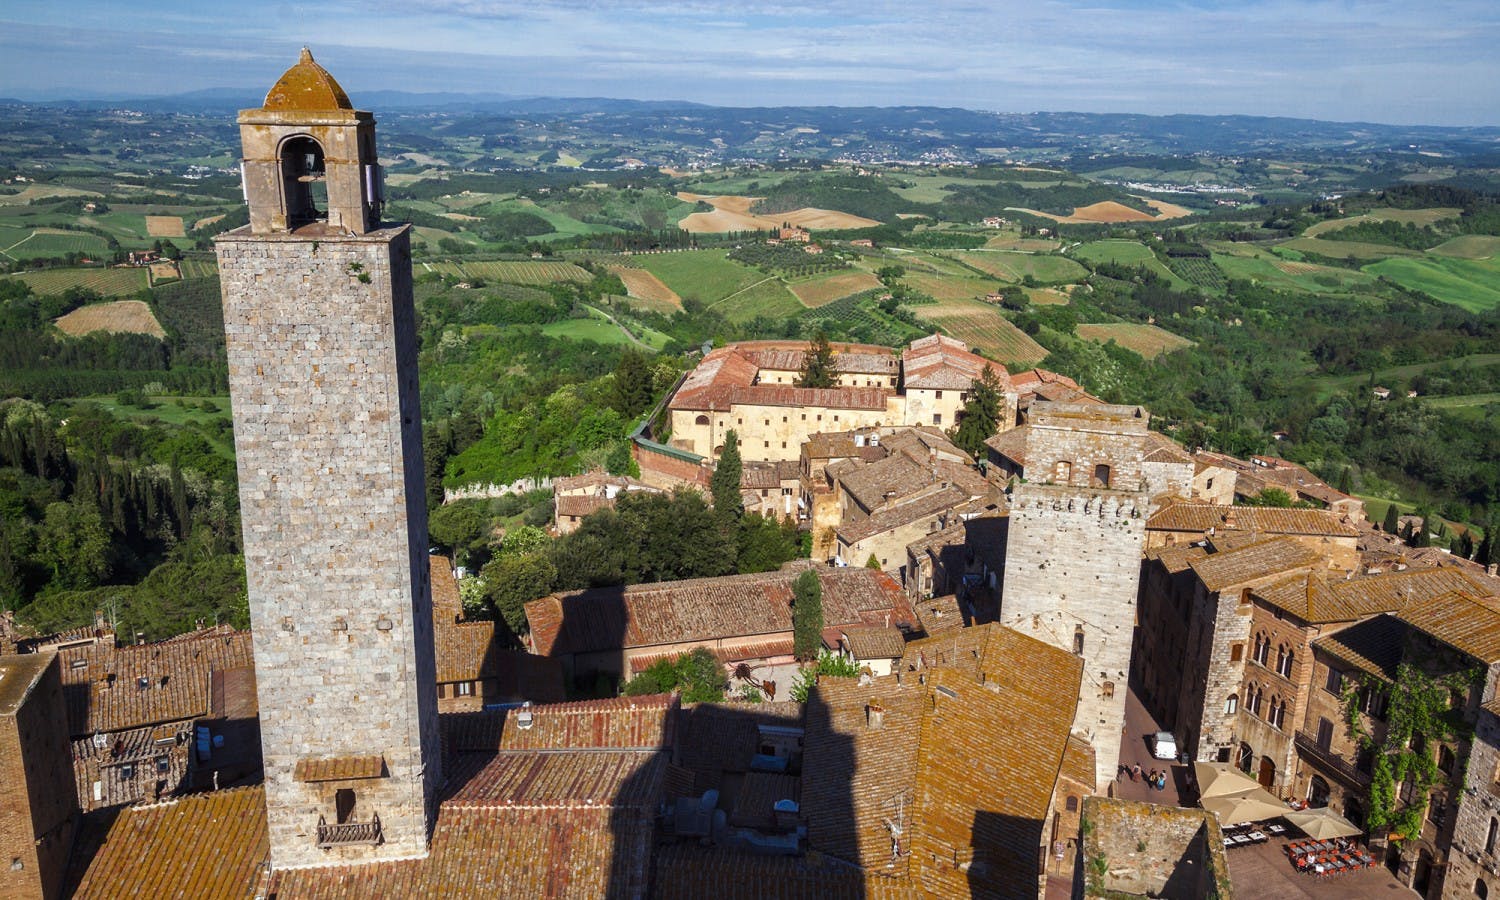 Gita di un giorno in Toscana con Chianti, Siena e San Gimignano